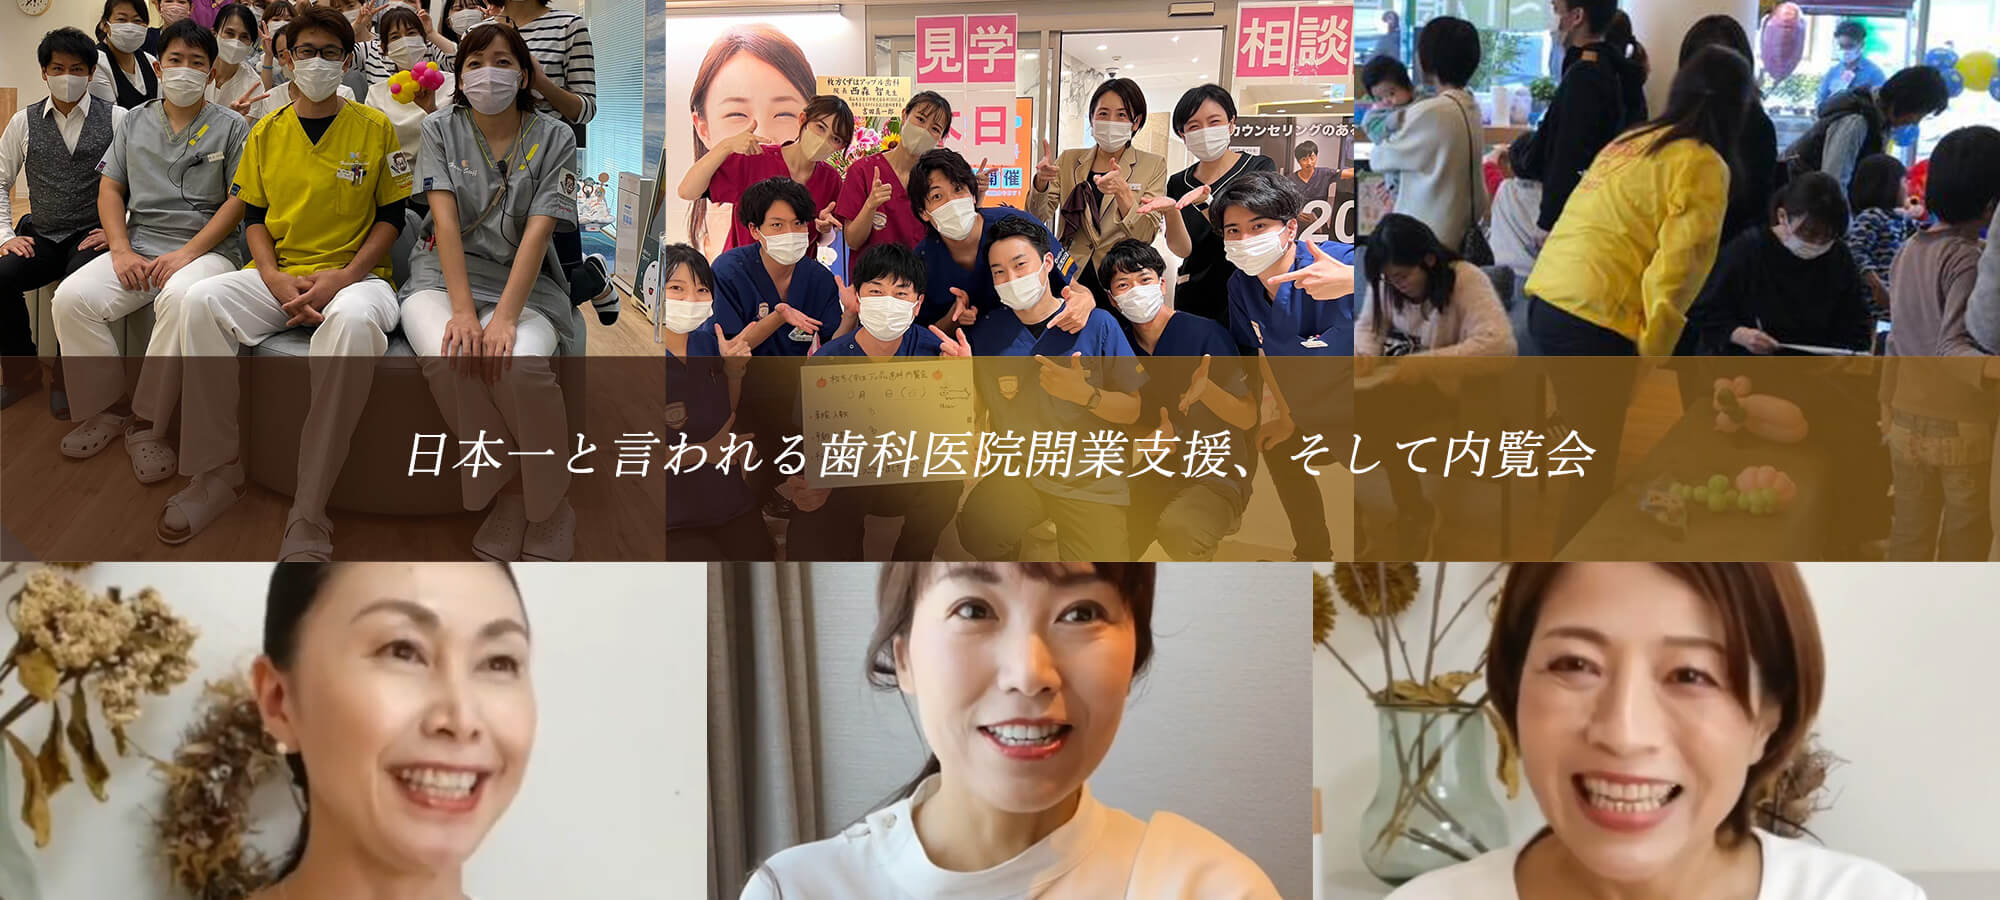 日本一と言われる歯科開業支援、そして内覧会